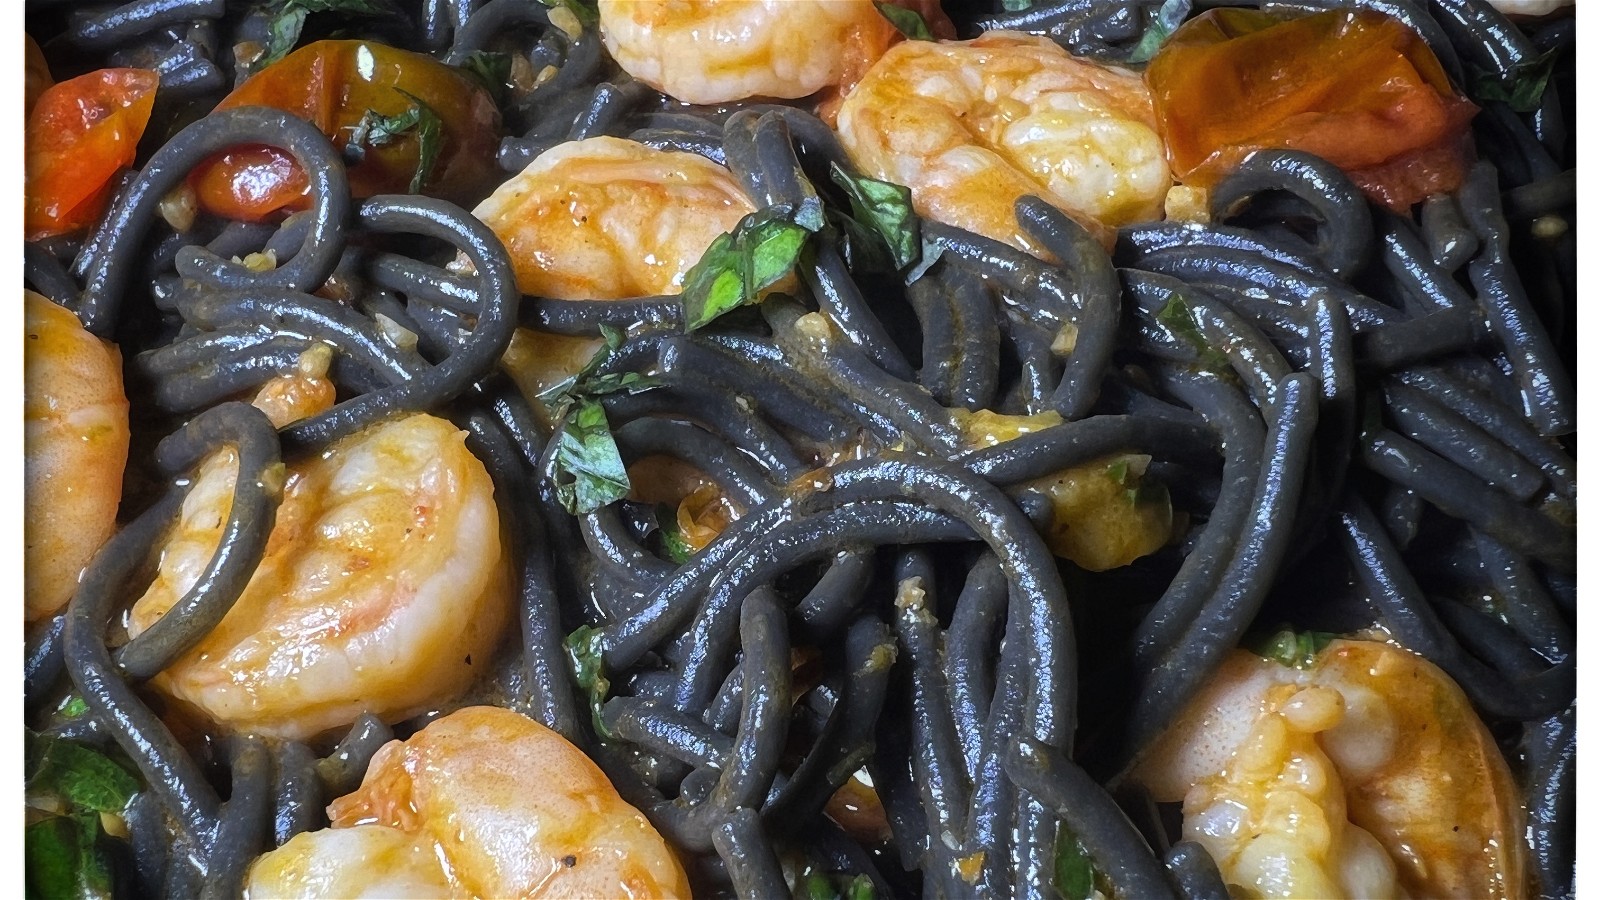 Image of Black Spaghetti Pasta & Shrimp